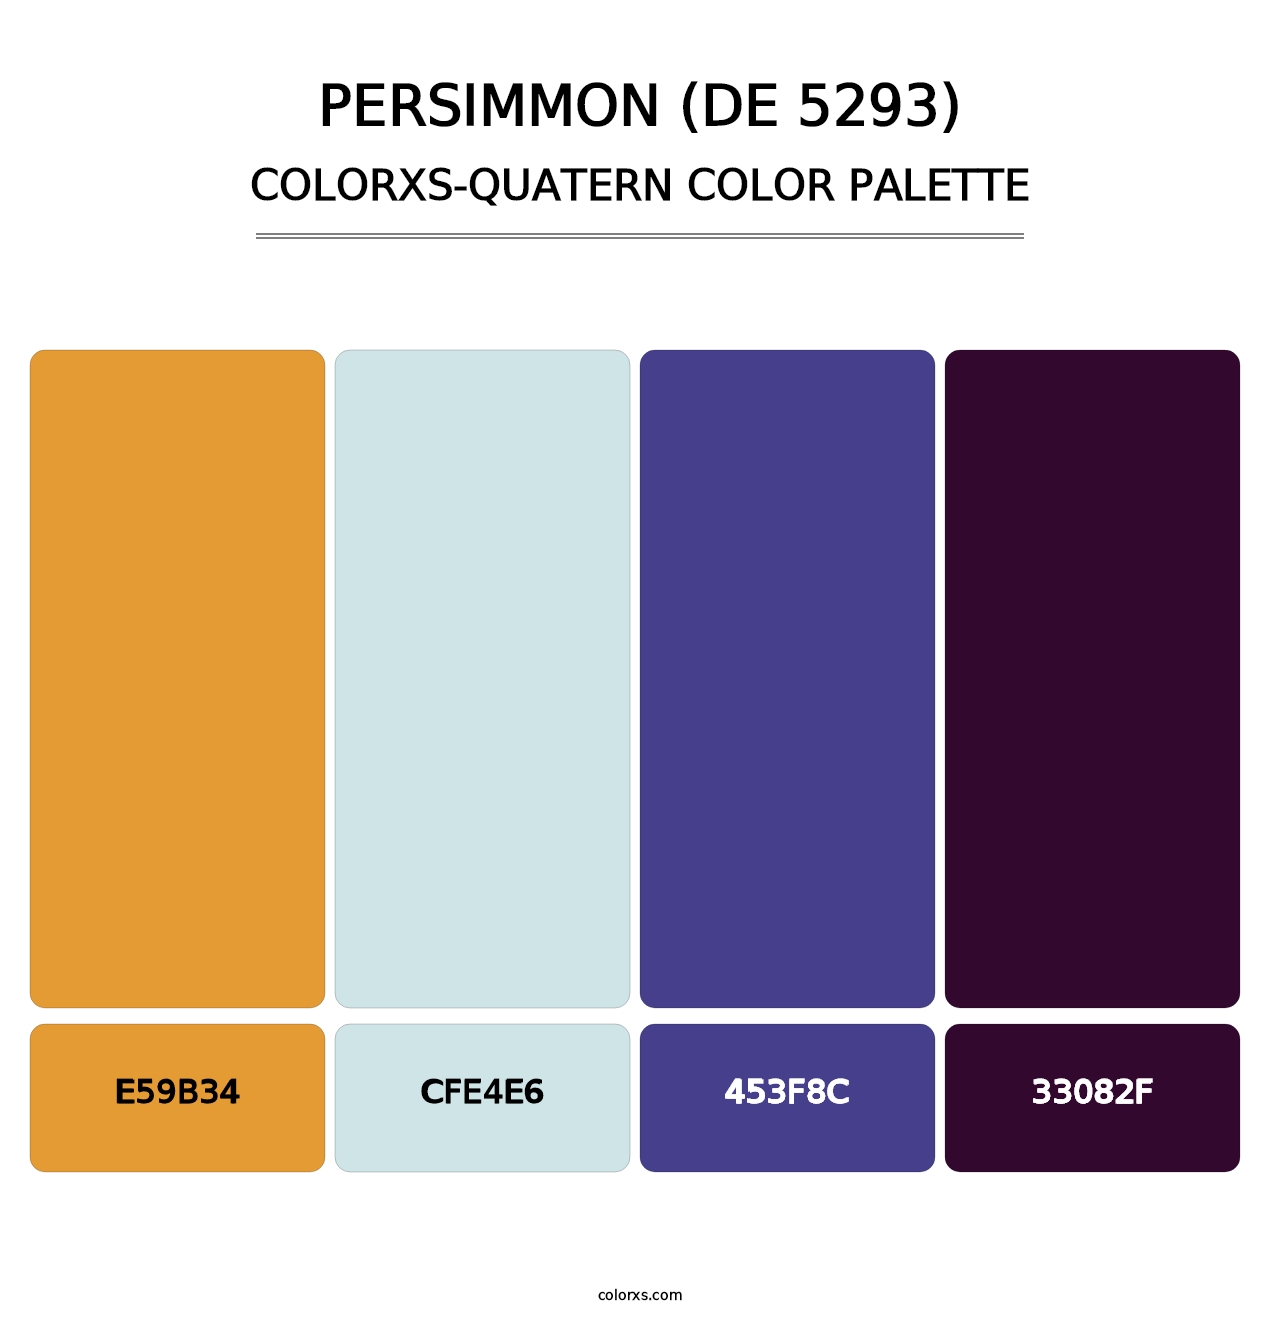 Persimmon (DE 5293) - Colorxs Quatern Palette